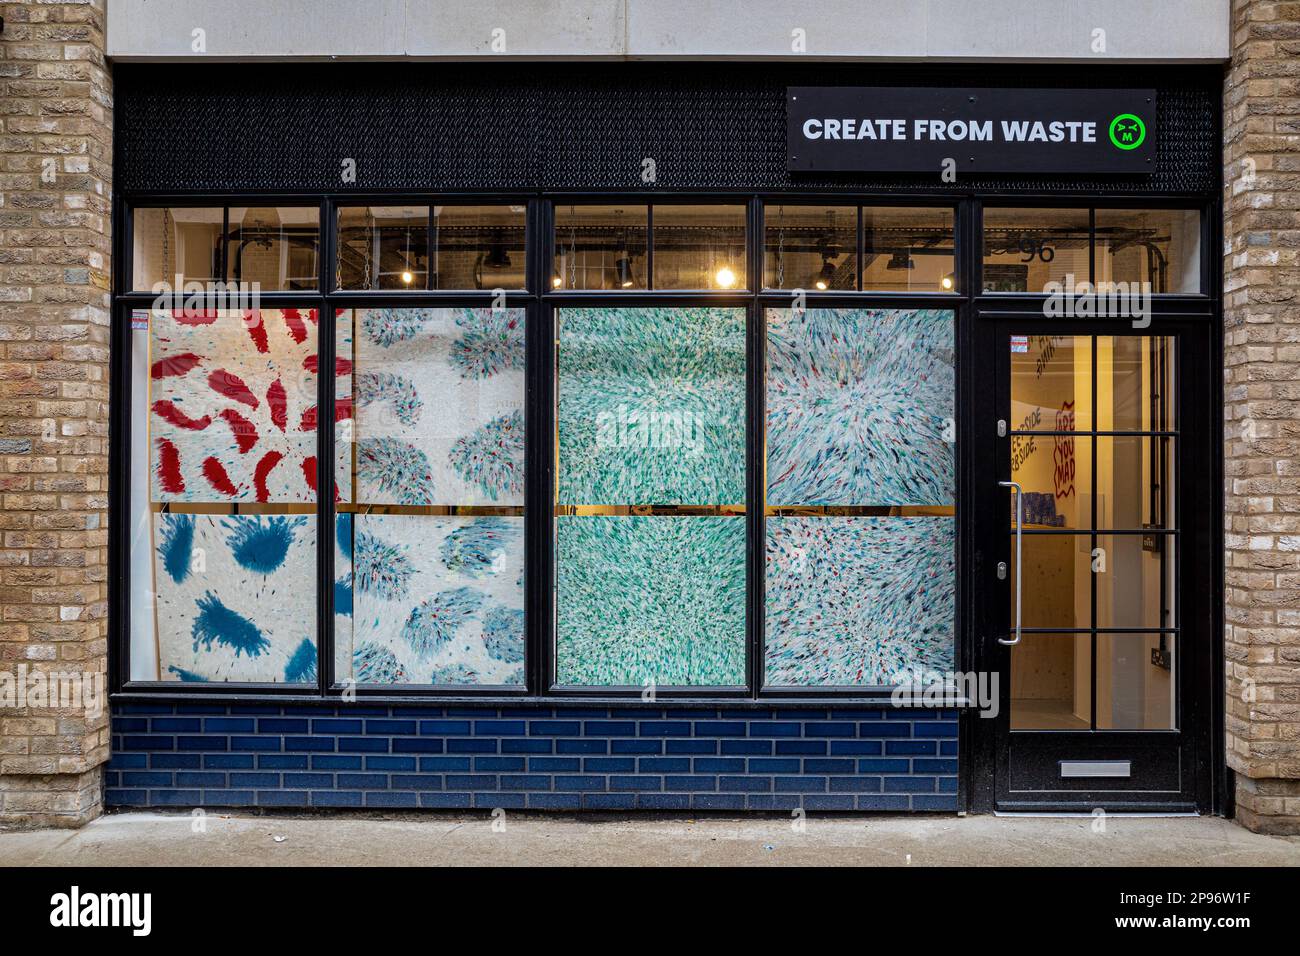 Sei Mad Plastic Recycling Centre Soho London - prende i rifiuti dal raggio di 250m del negozio 97 Berwick St Soho & lavora su modi creativi per riciclarlo Foto Stock